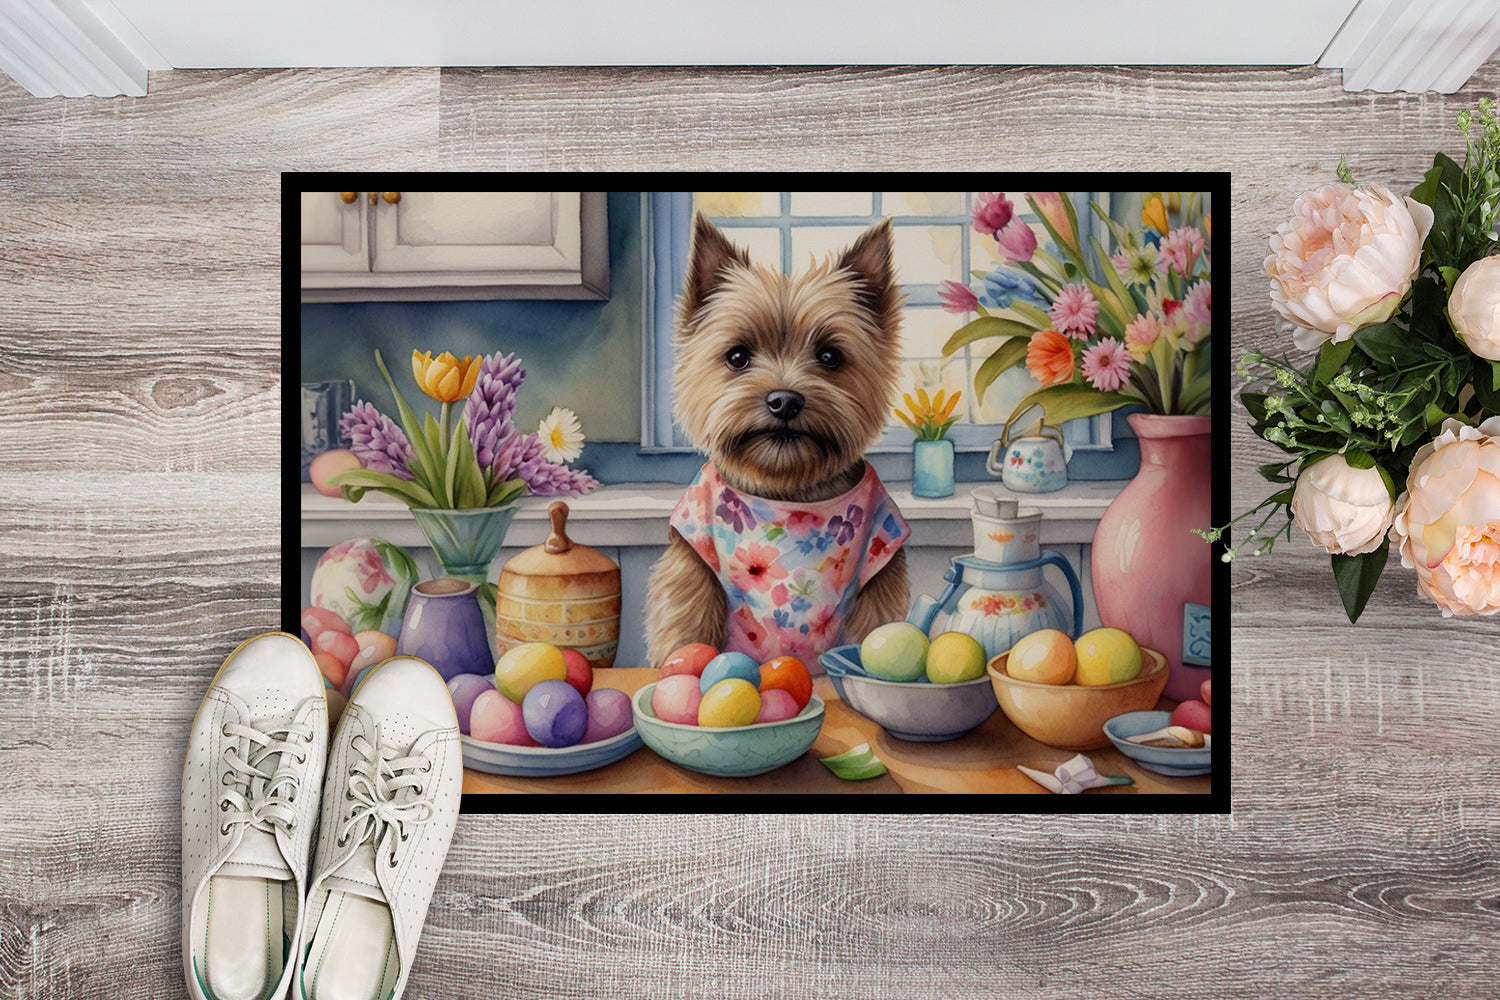 Buy this Decorating Easter Cairn Terrier Doormat